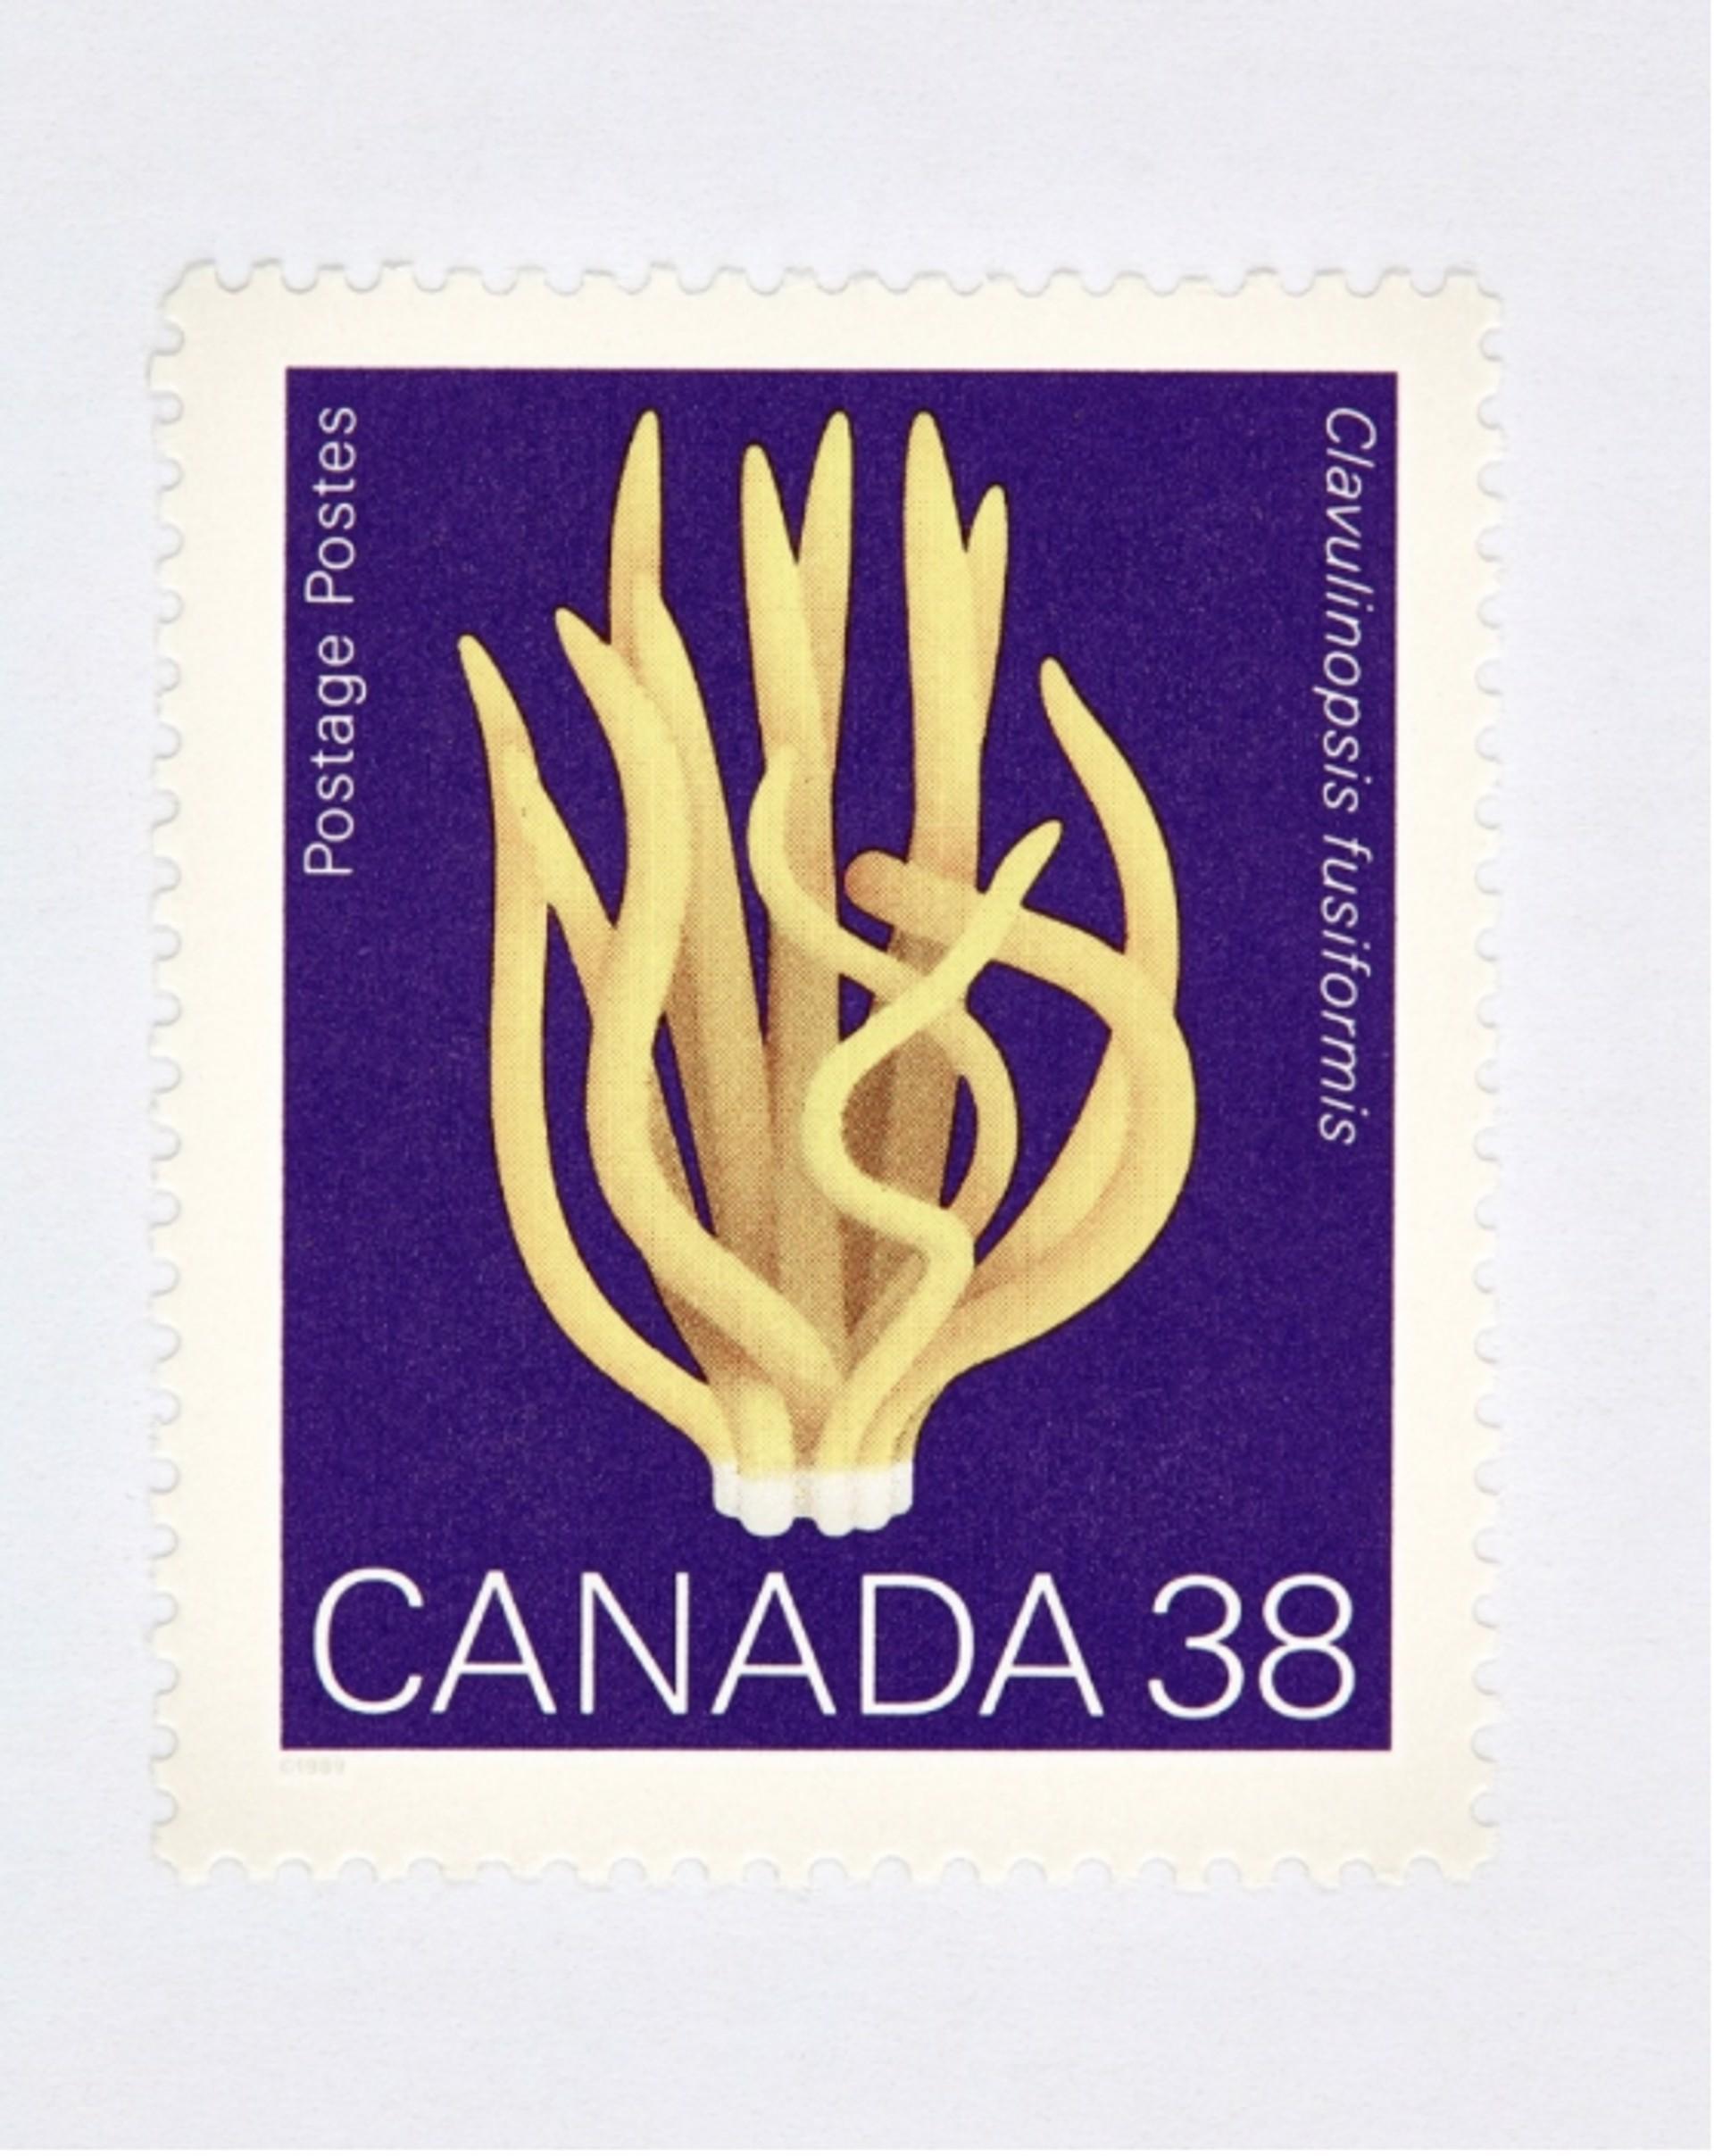 Kanada 38 Pilz (violett)
Digitaler C-Print / Archivpigmentdruck
Auflage von 20 Stück pro Größe
Verfügbare Größen:
36 x 27

Die Serie "Collectible" beschäftigt sich auf Makroebene mit Münzen, Banknoten und Briefmarken. Diese Bilder werden mit der